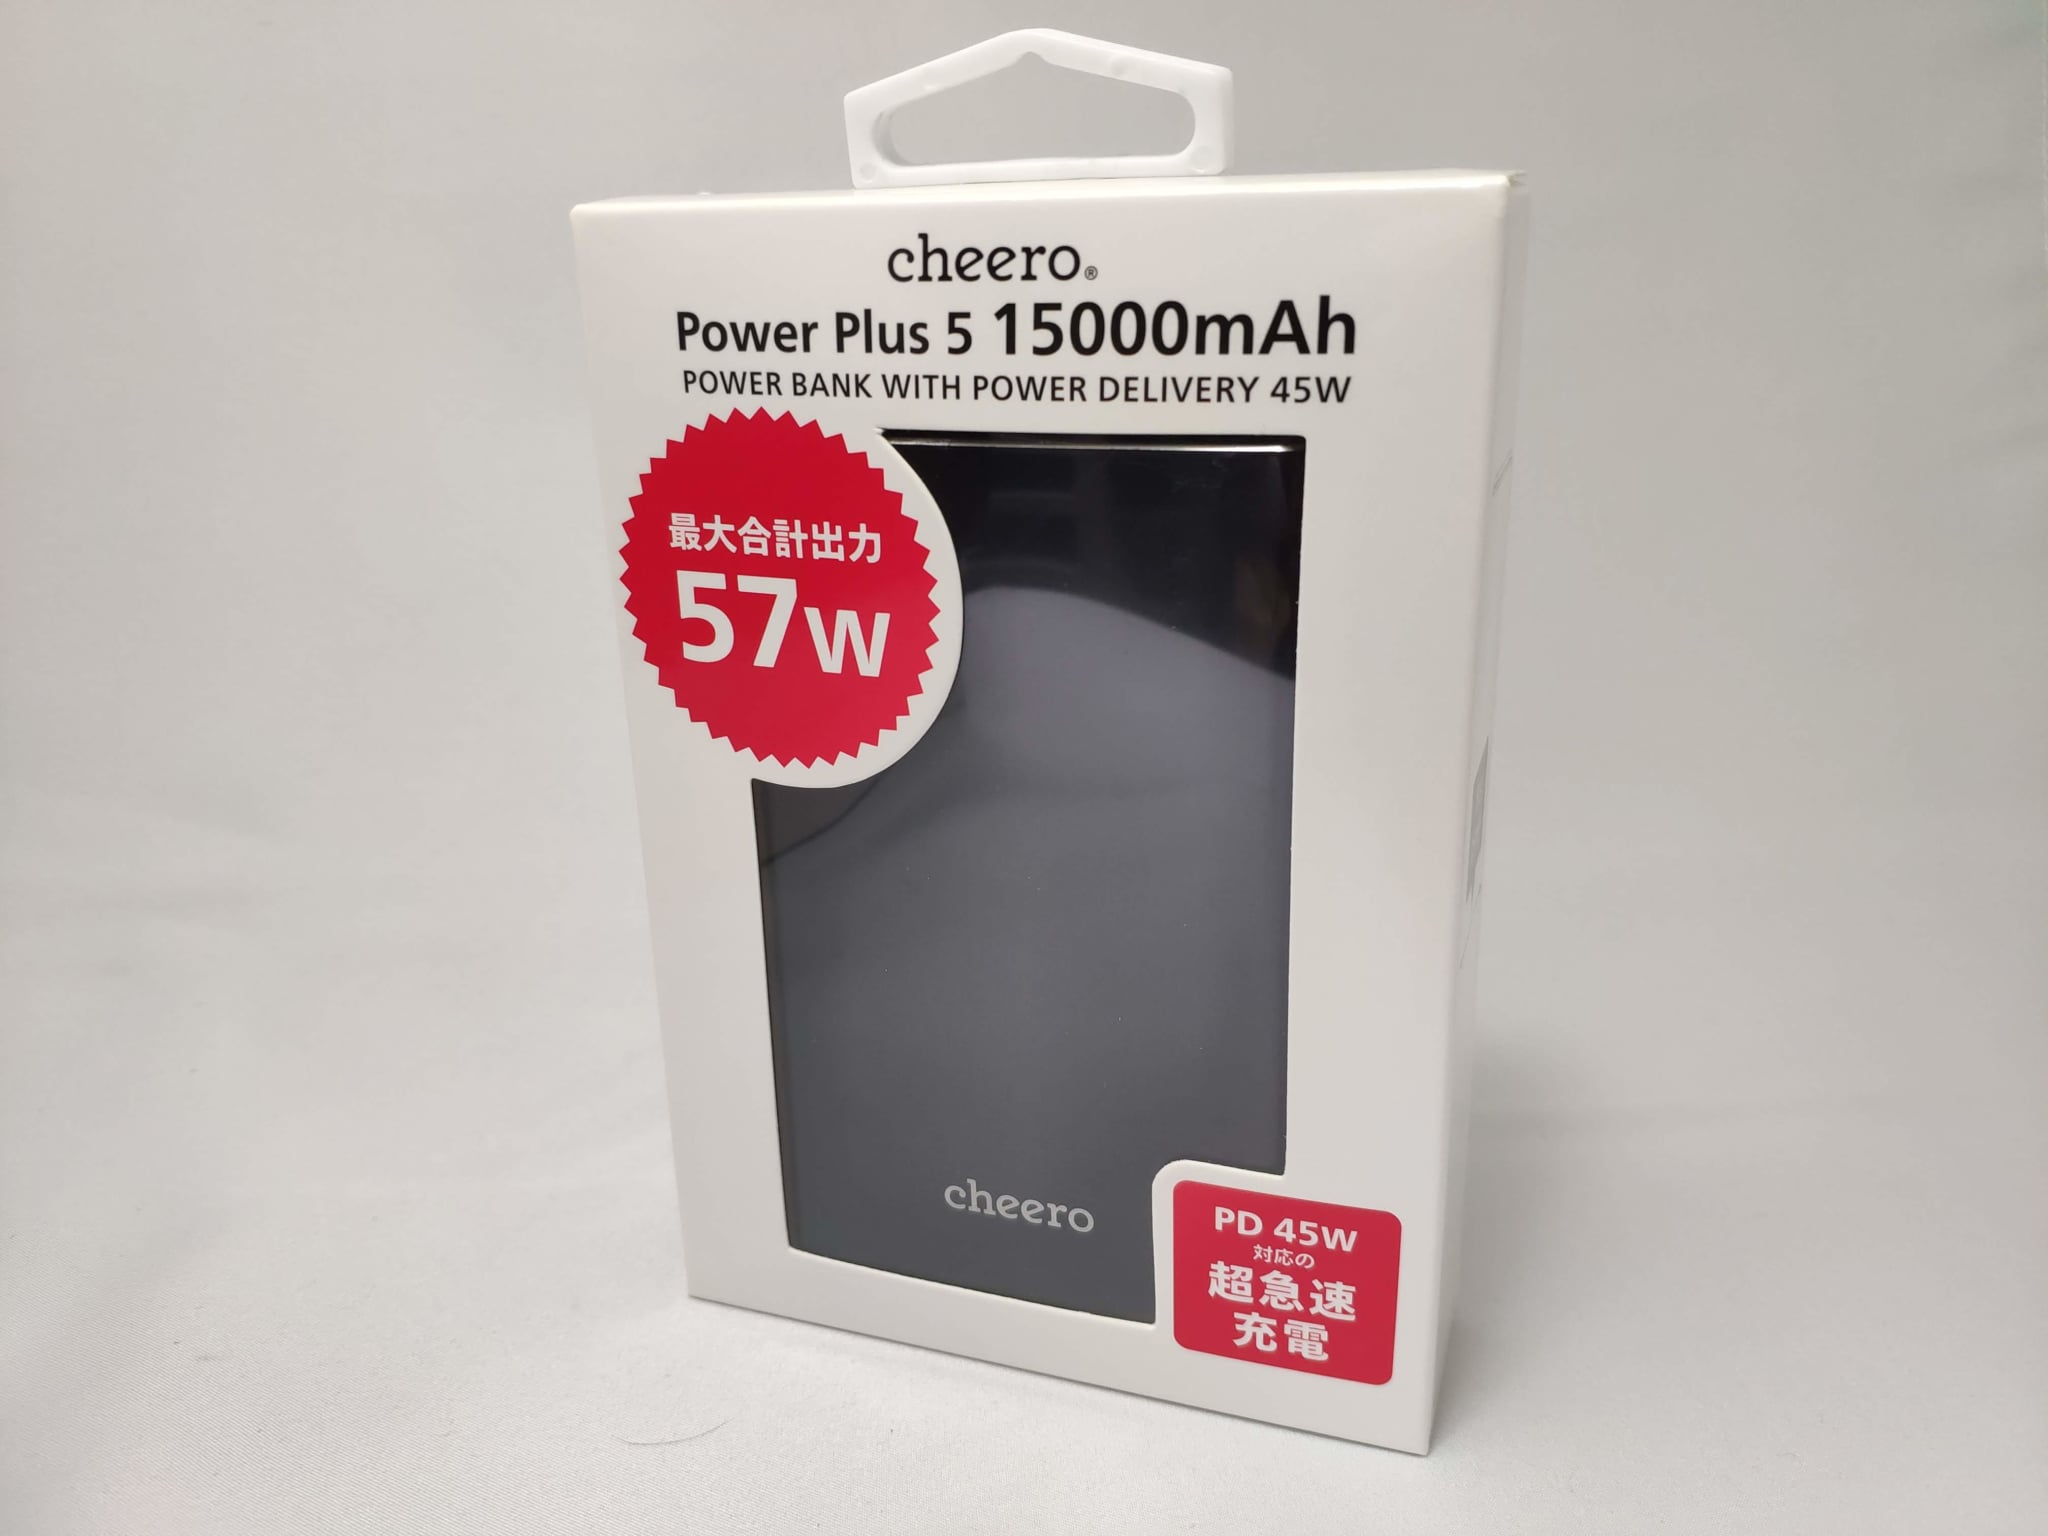 PD45Wの入出力に対応した大容量モバイルバッテリー「cheero Power Plus 5」が最高すぎる。 │ きよさんが果てるまで。